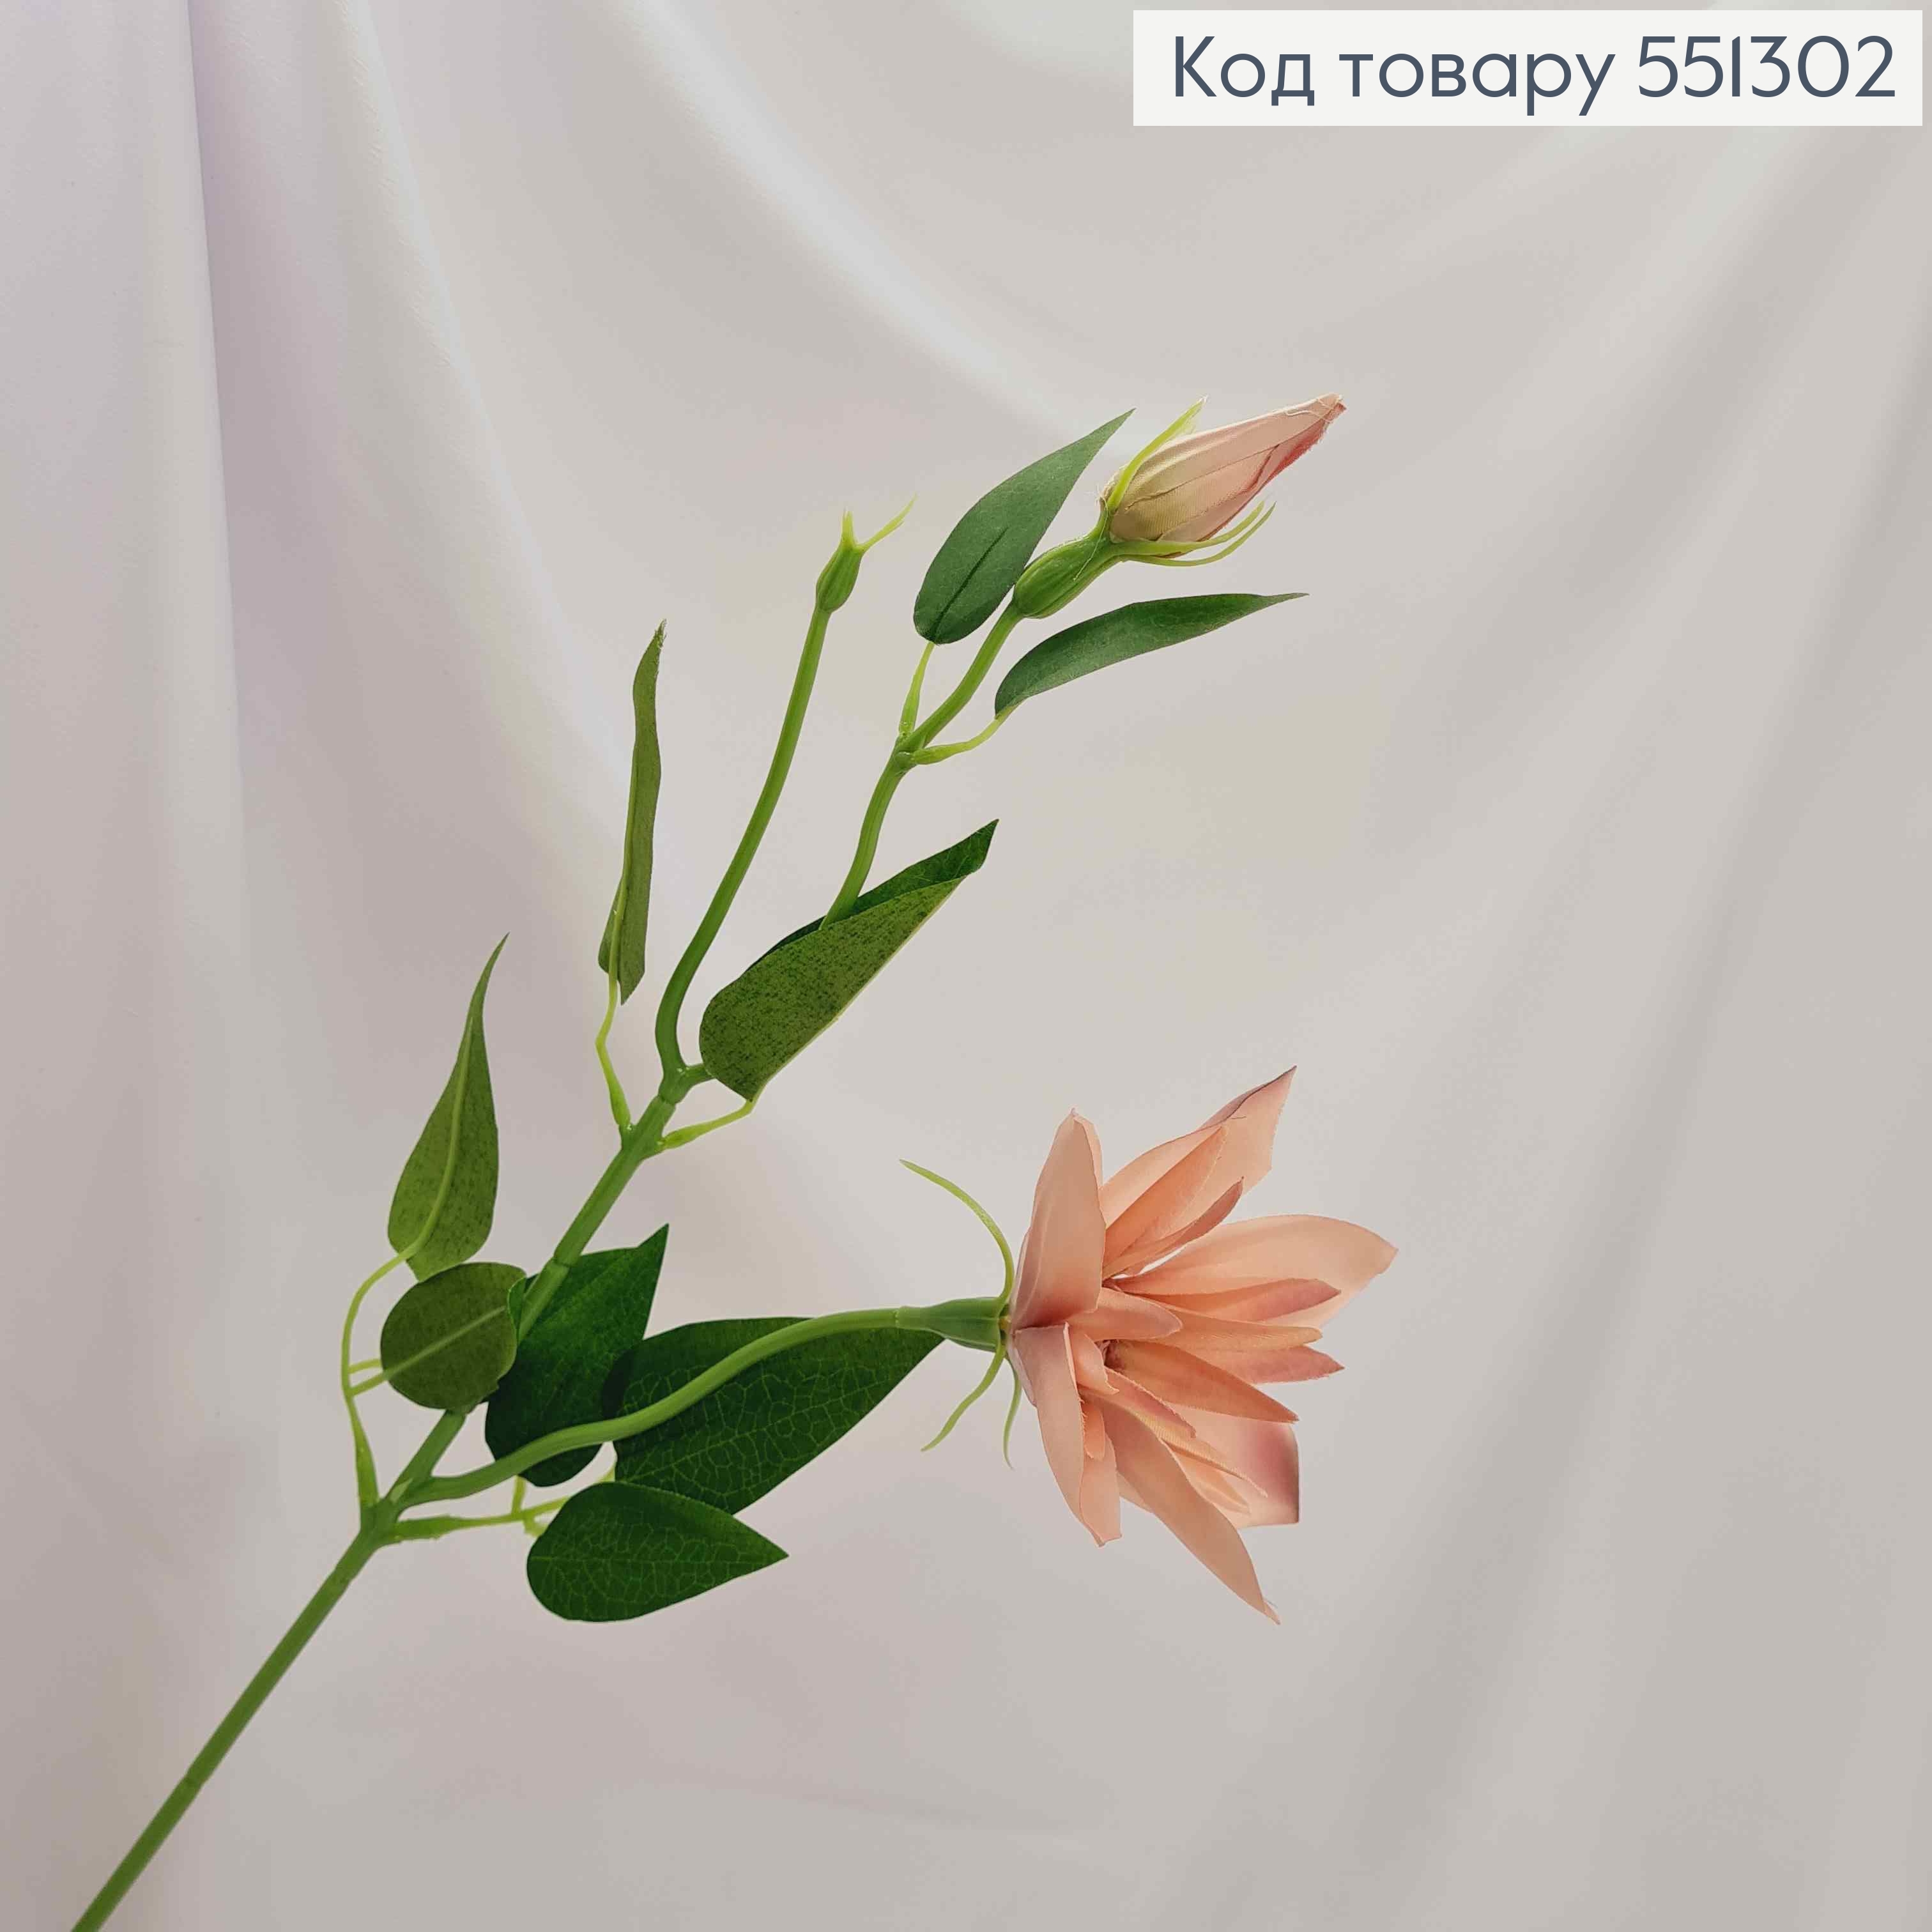 Штучні квіти, гілочка Клематіс , ПУДРОВОГО  кольору, 1 квітка + 1 бутон, на металевому стержні, 47см 551302 фото 2